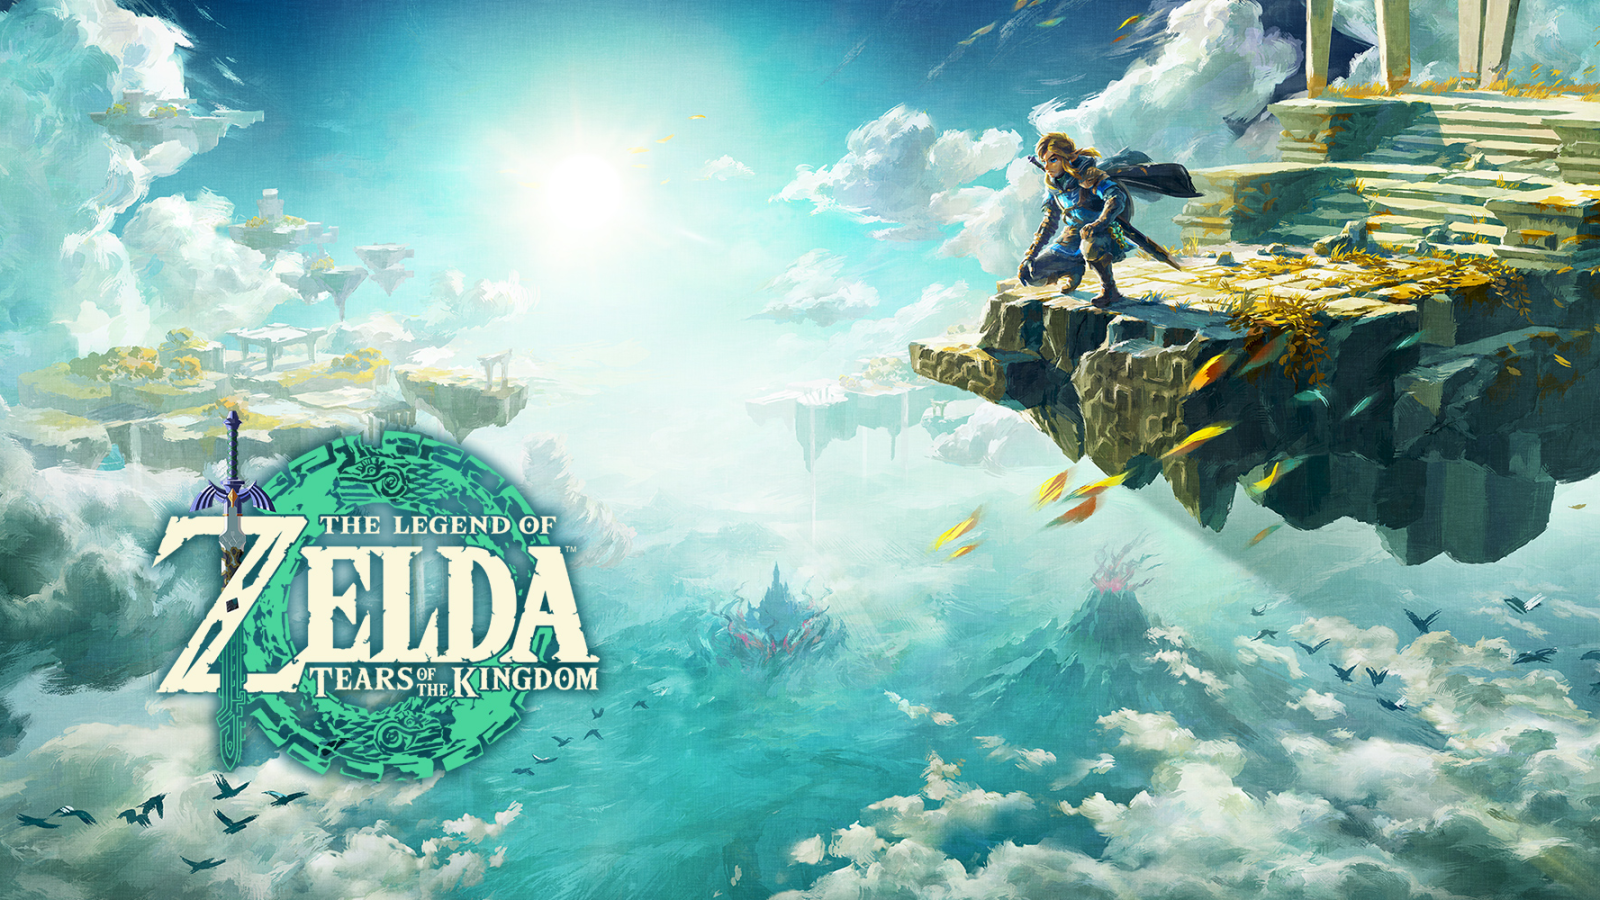 Zelda: Breath of the Wild Will Be Nintendo's Final Wii U Game